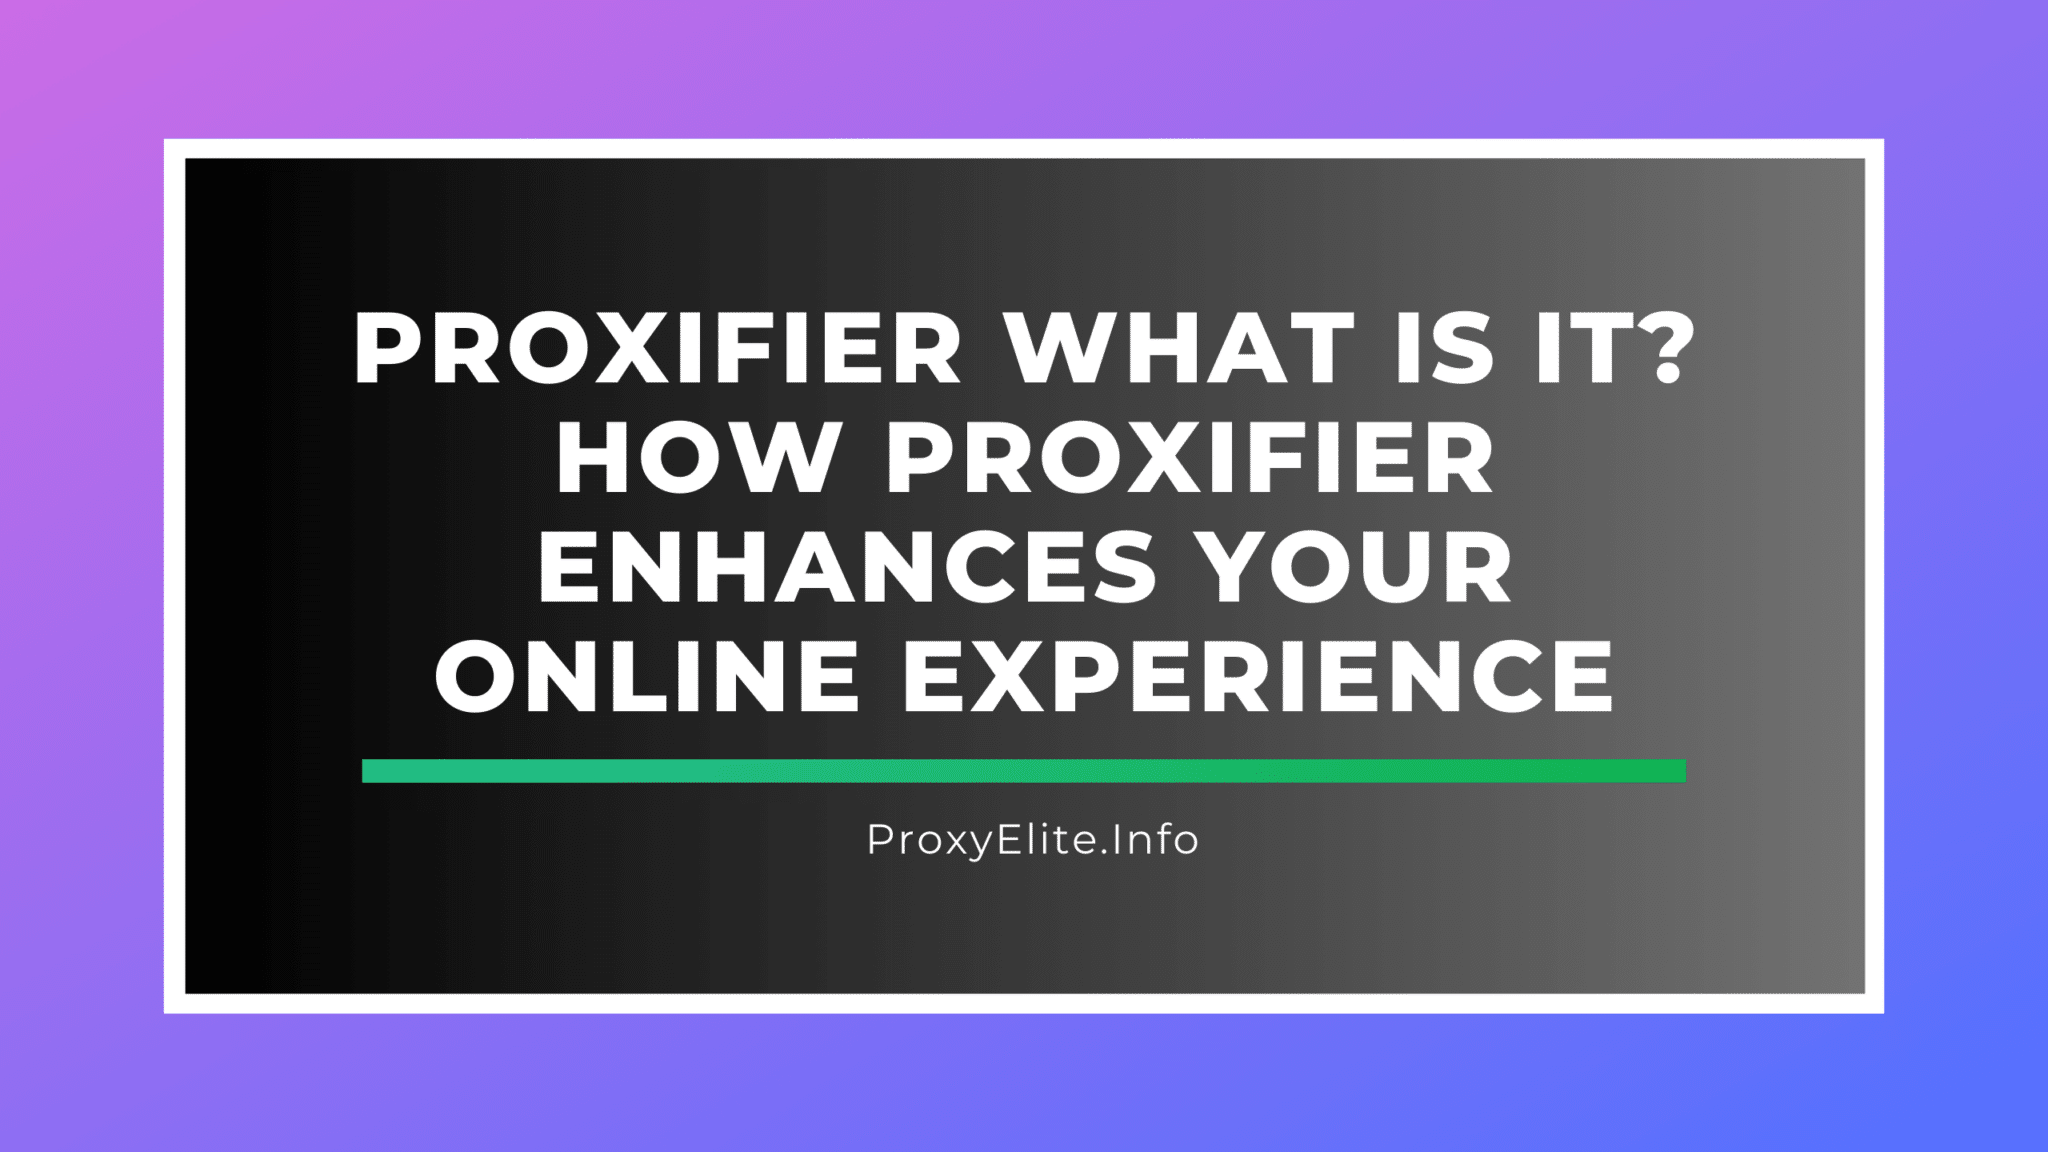 Proxifier nó là gì? Proxifier nâng cao trải nghiệm trực tuyến của bạn như thế nào